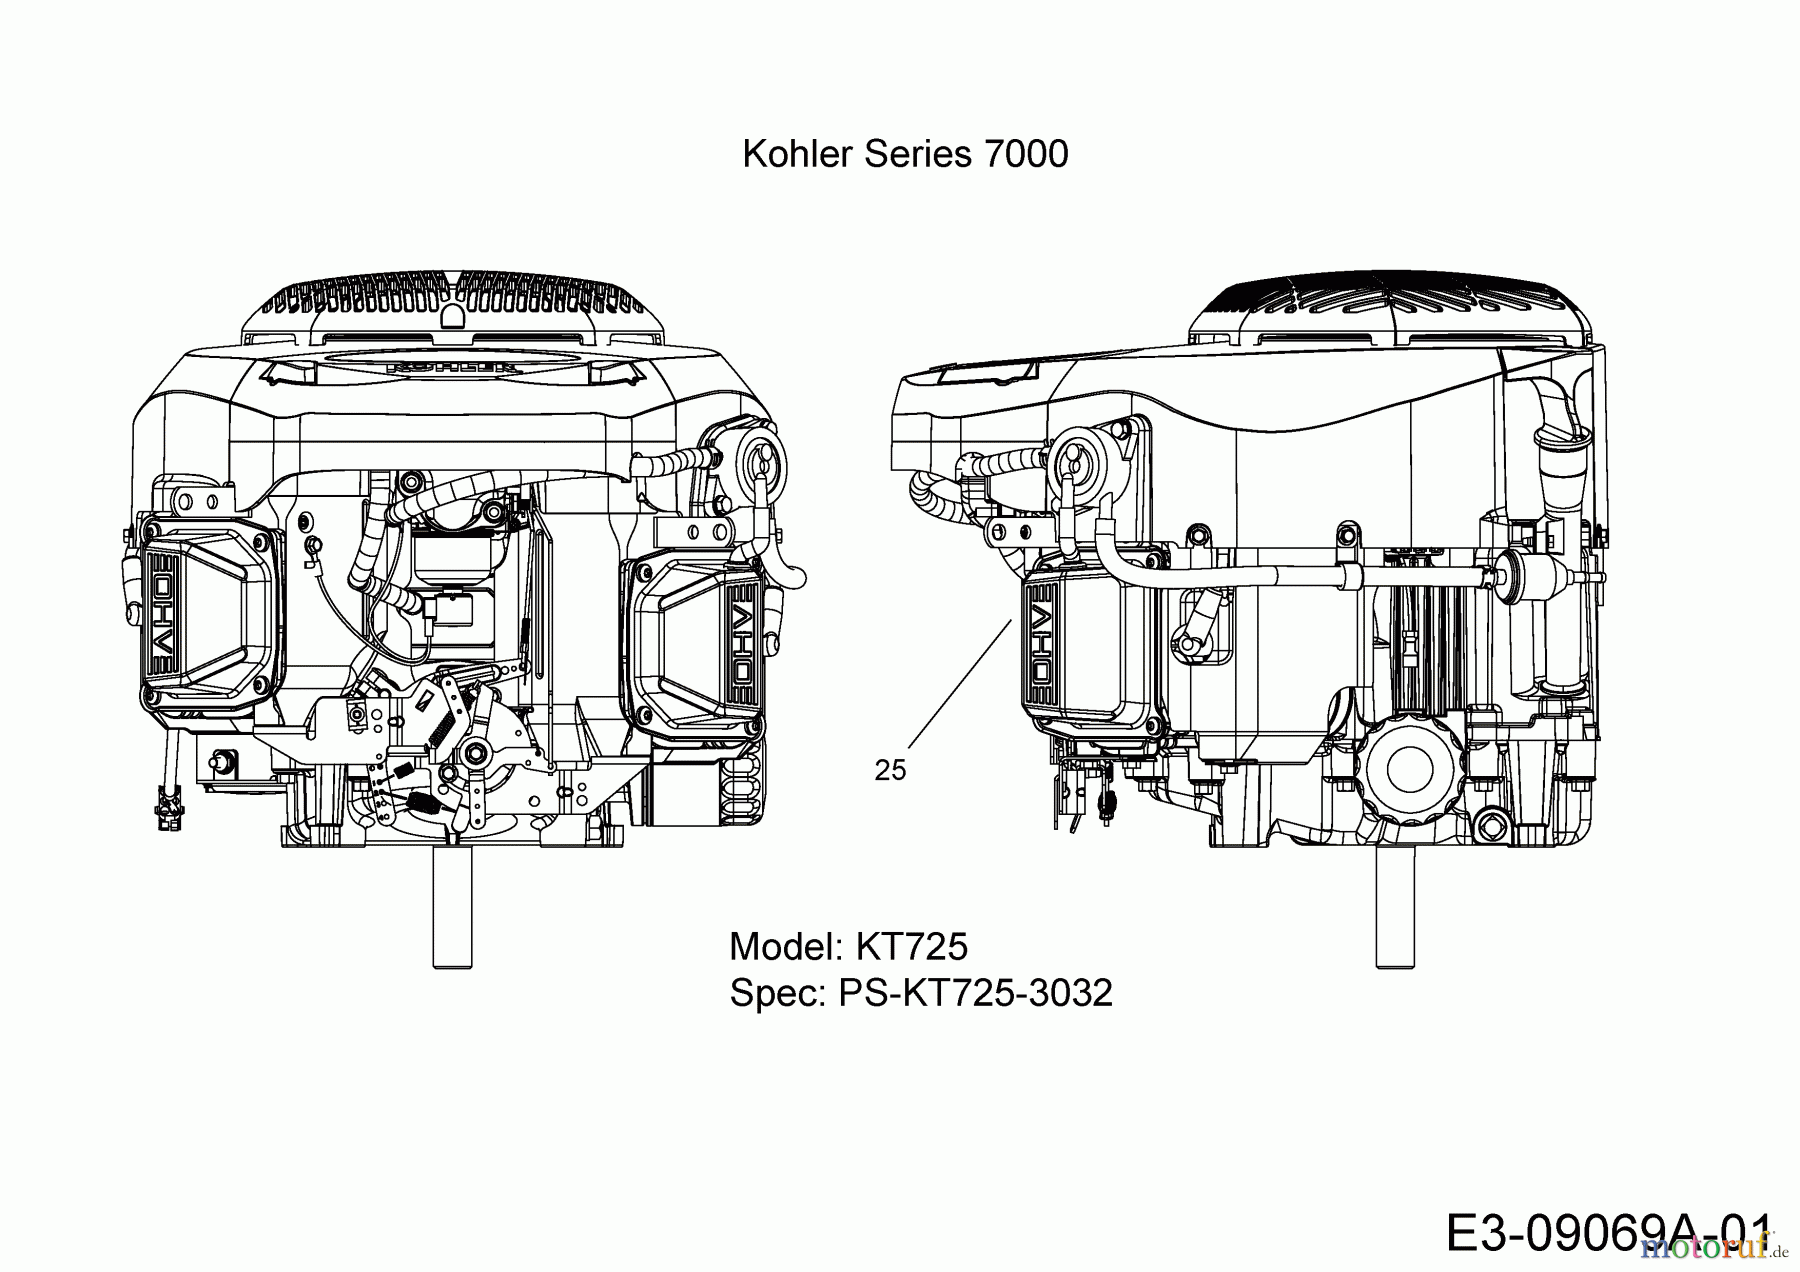  Massey Ferguson Rasentraktoren MF 42-22 SD 13HP93GG695  (2015) Motor Kohler